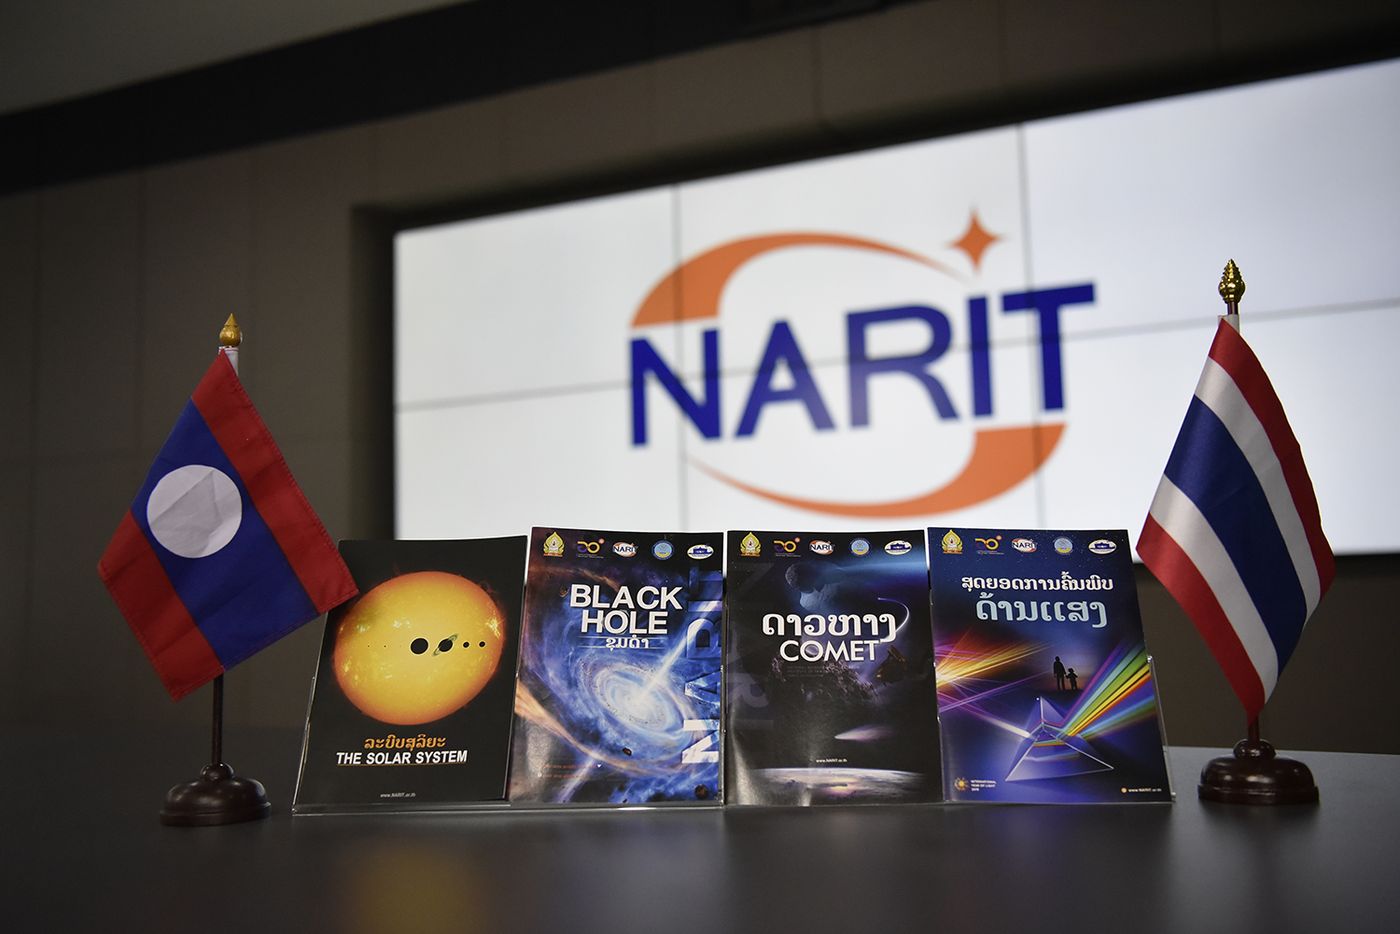 ไทยส่งมอบหนังสือความรู้ดาราศาสตร์ภาษาลาว 8,000 เล่ม  หวังสร้างความตระหนักด้านวิทยาศาสตร์และดาราศาสตร์ใน สปป. ลาว